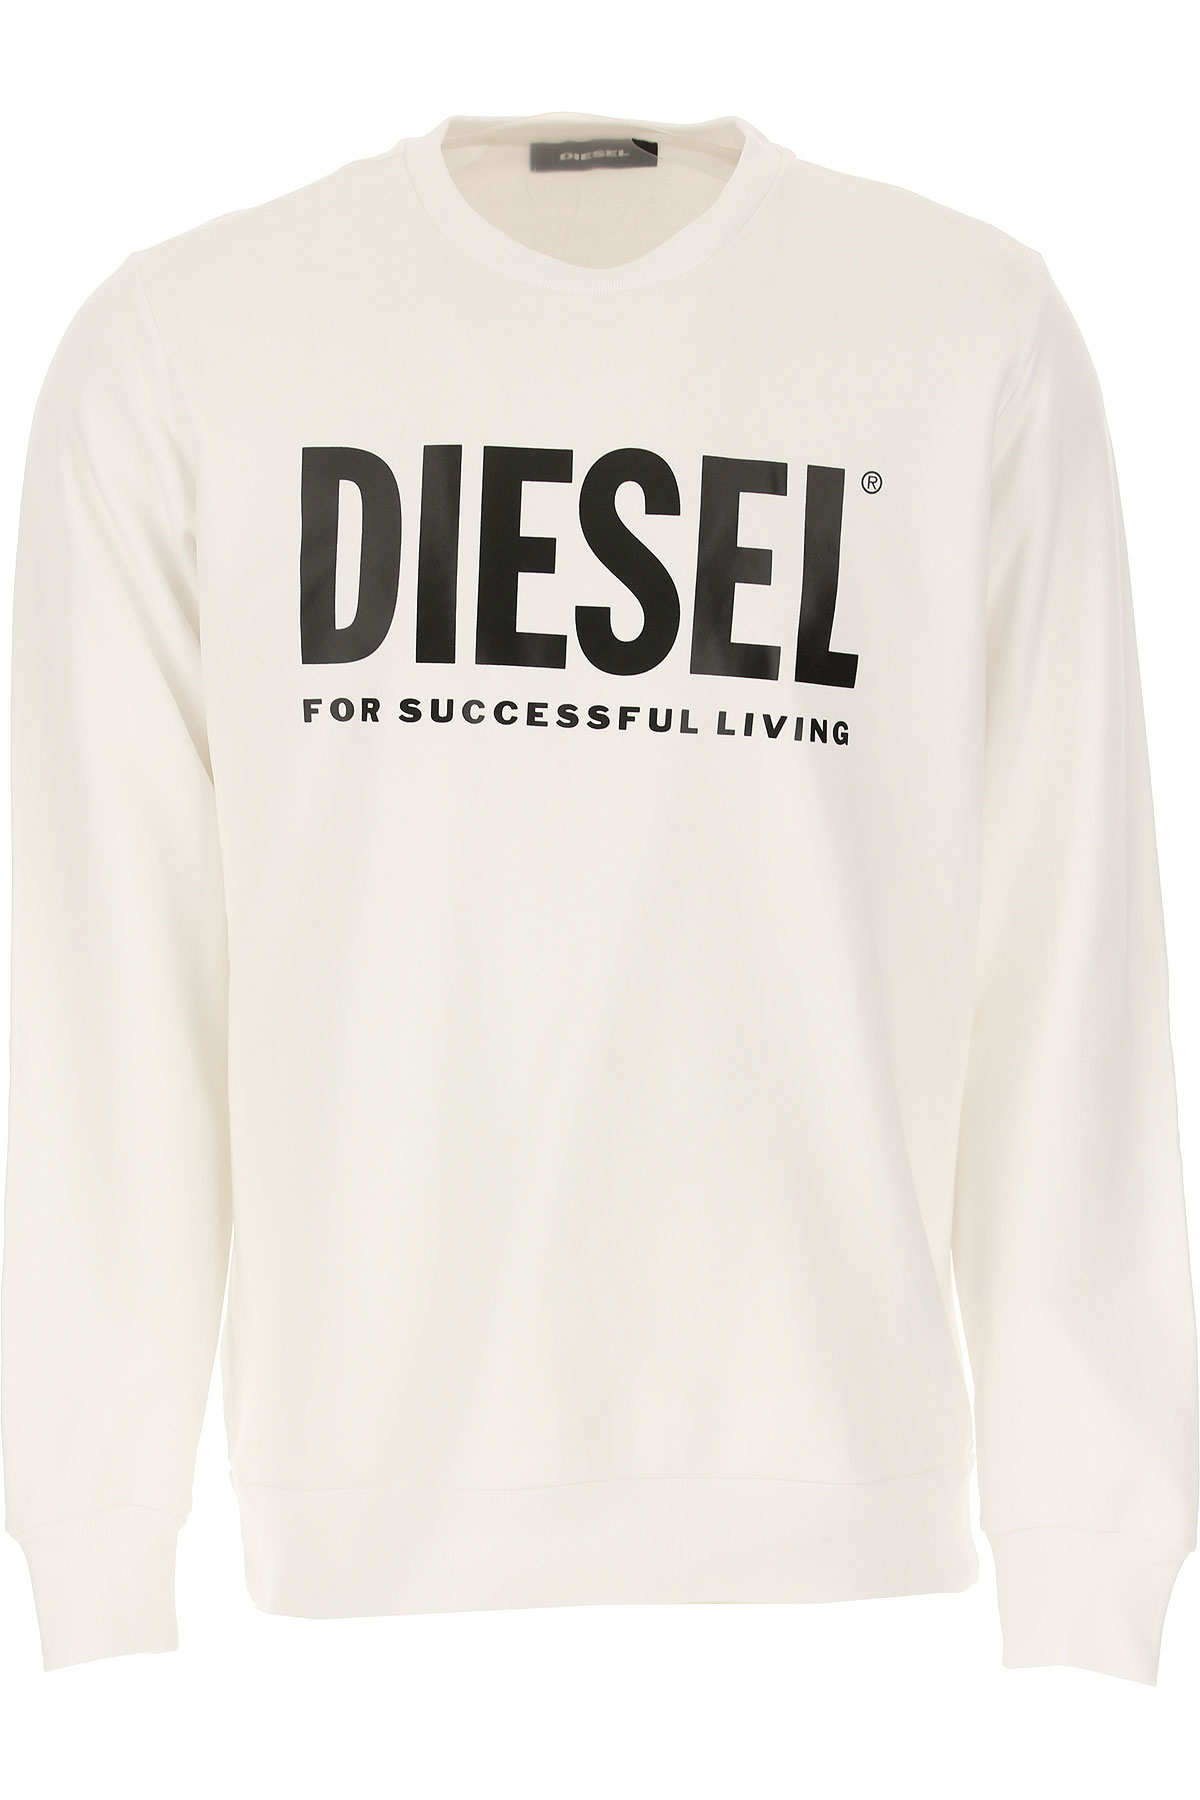 Diesel Sweatshirt für Herren, Kapuzenpulli, Hoodie, Sweats Günstig im Sale, Weiss, Baumwolle, 2017, L XL